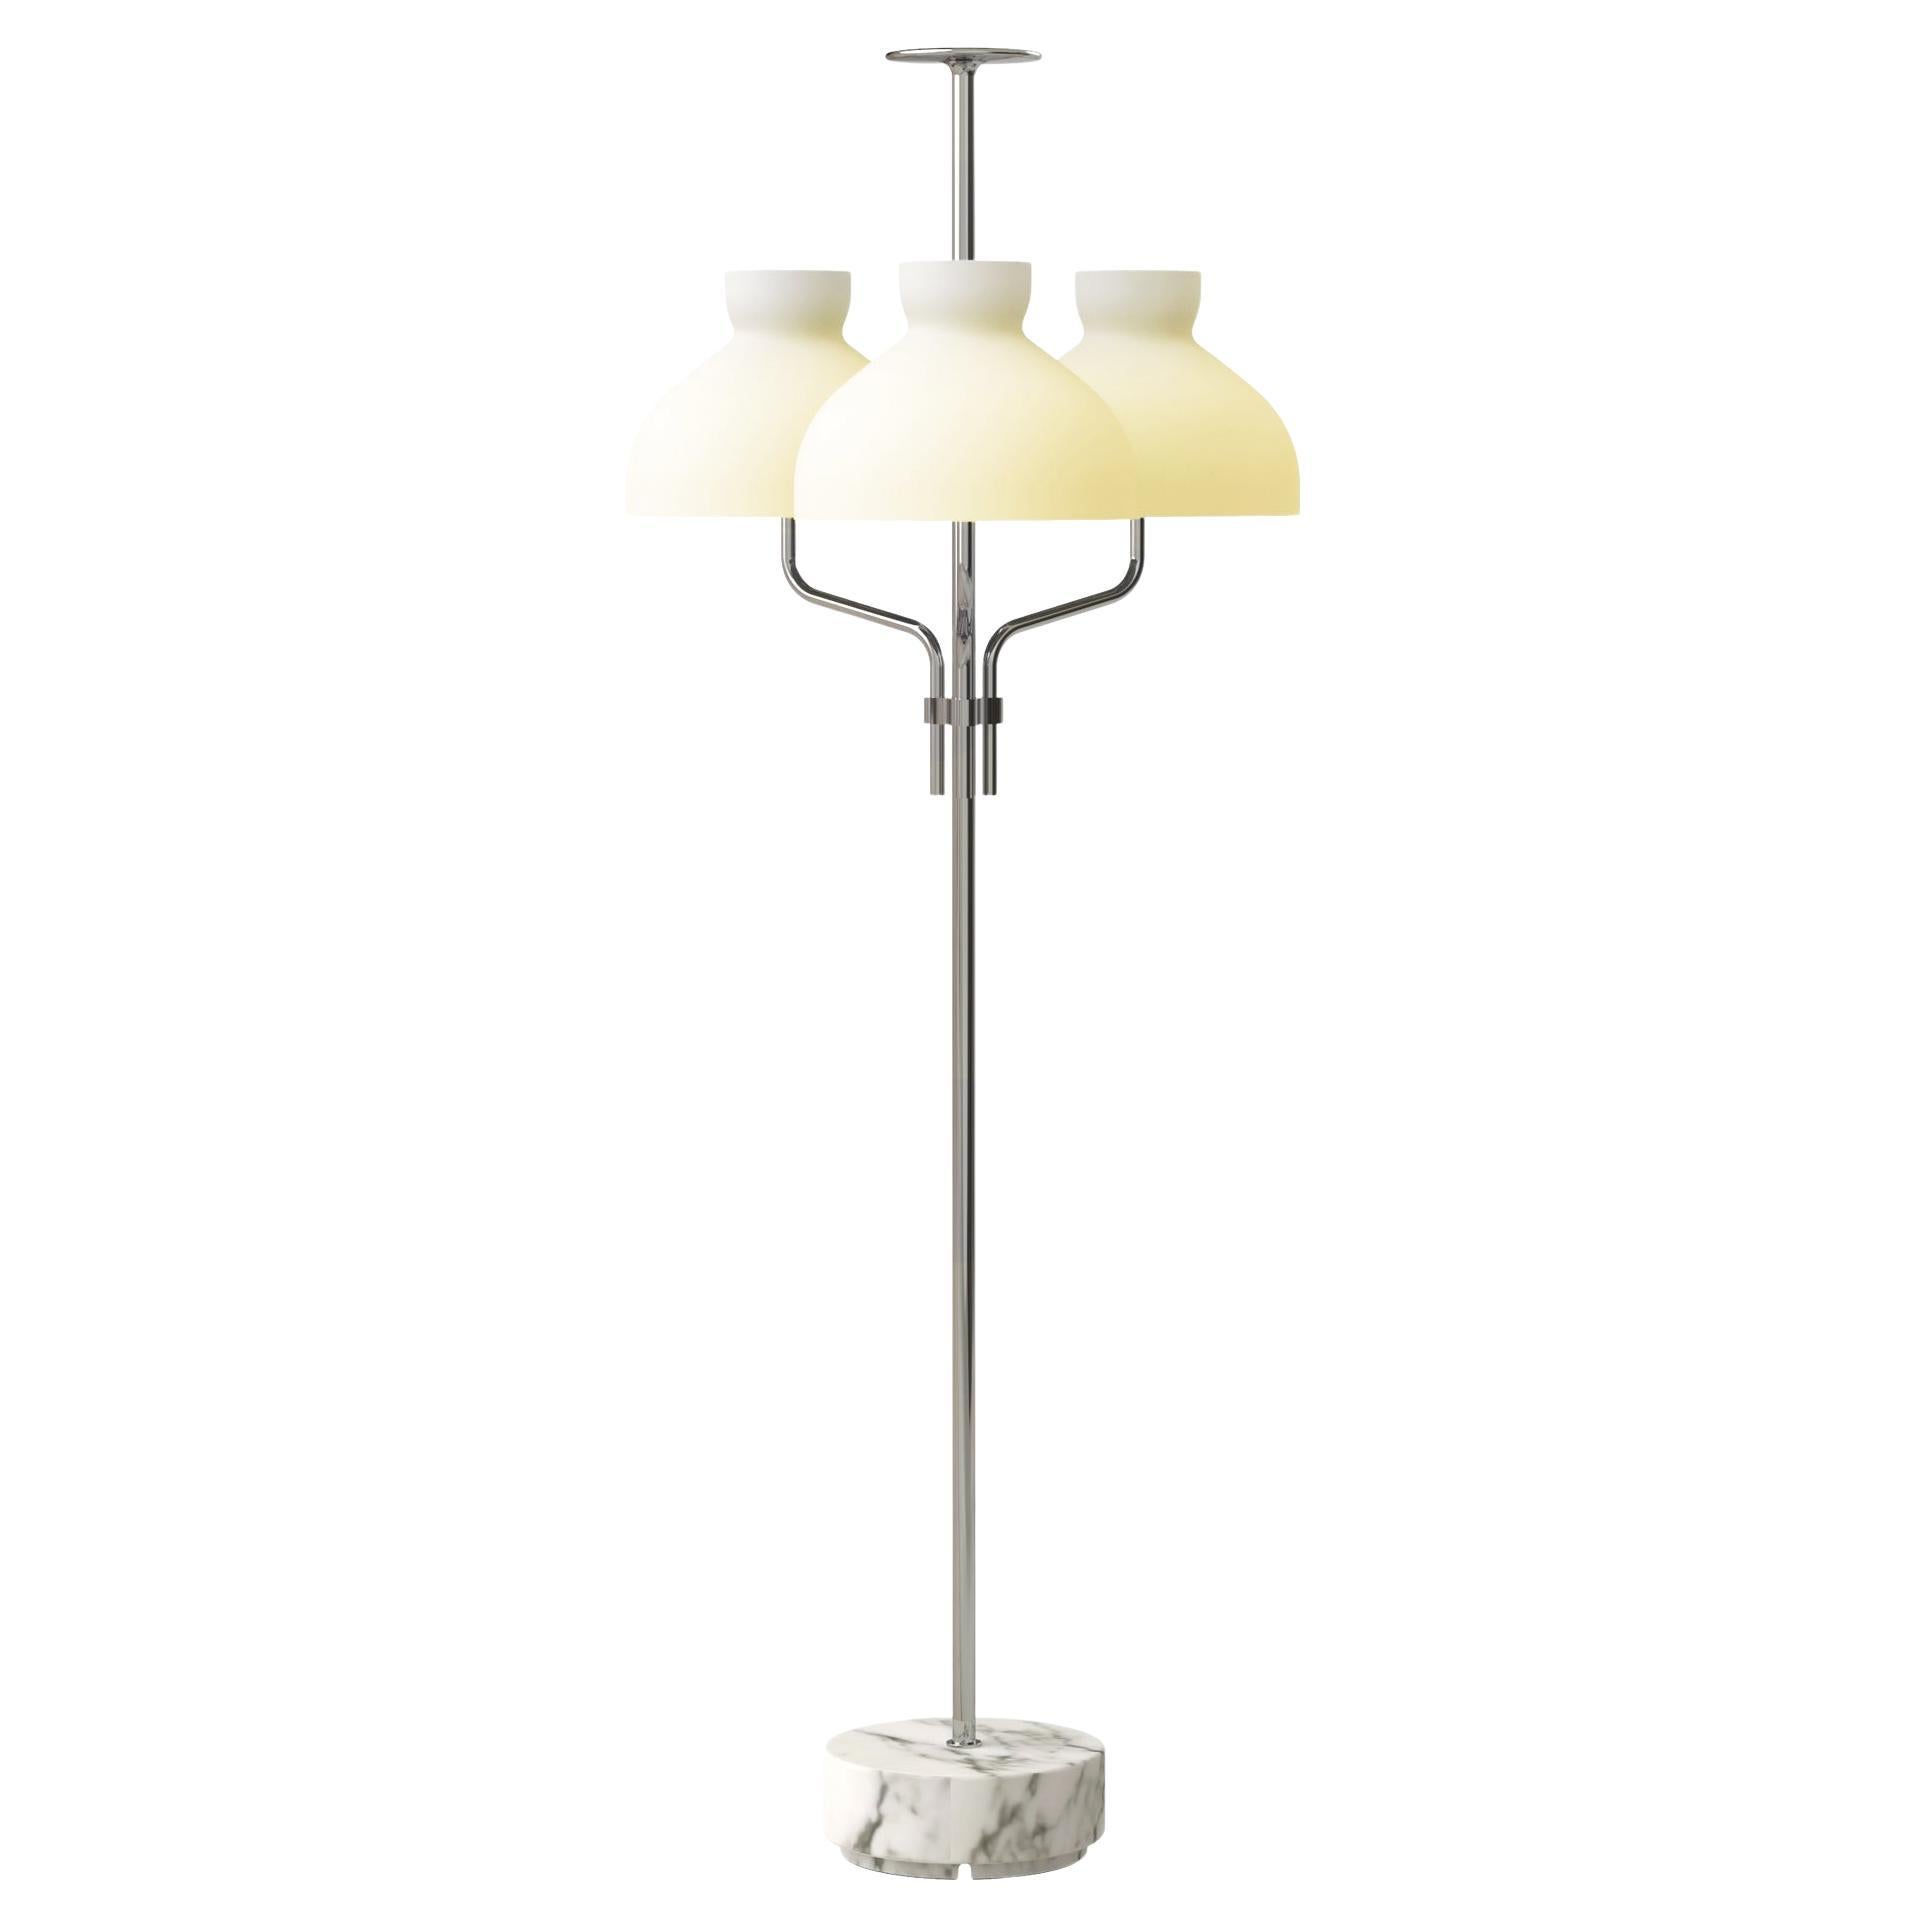 Ignazio Gardella 'Arenzano Tre Fiamme' Floor Lamp in White Marble and Chrome